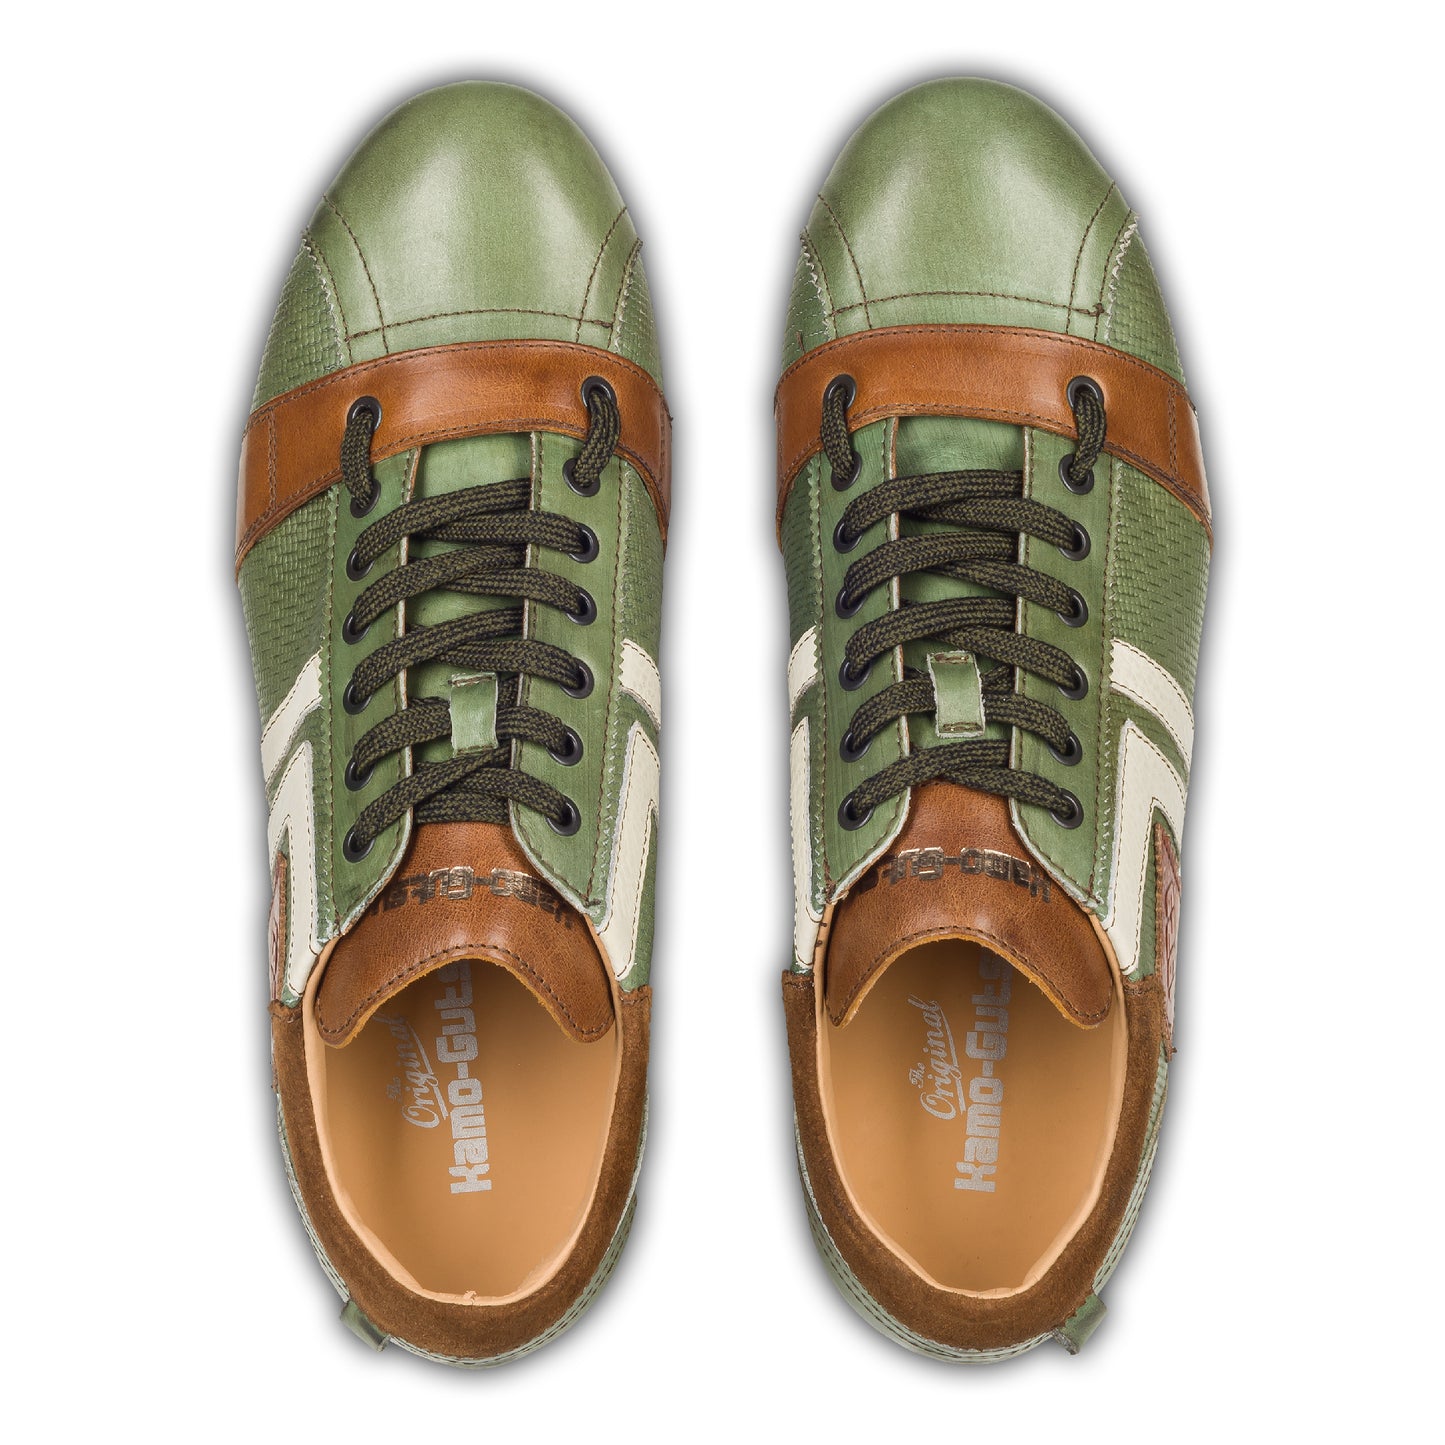 KAMO-GUTSU Sneaker, grün mit braun und weiß, paarweise Draufsicht